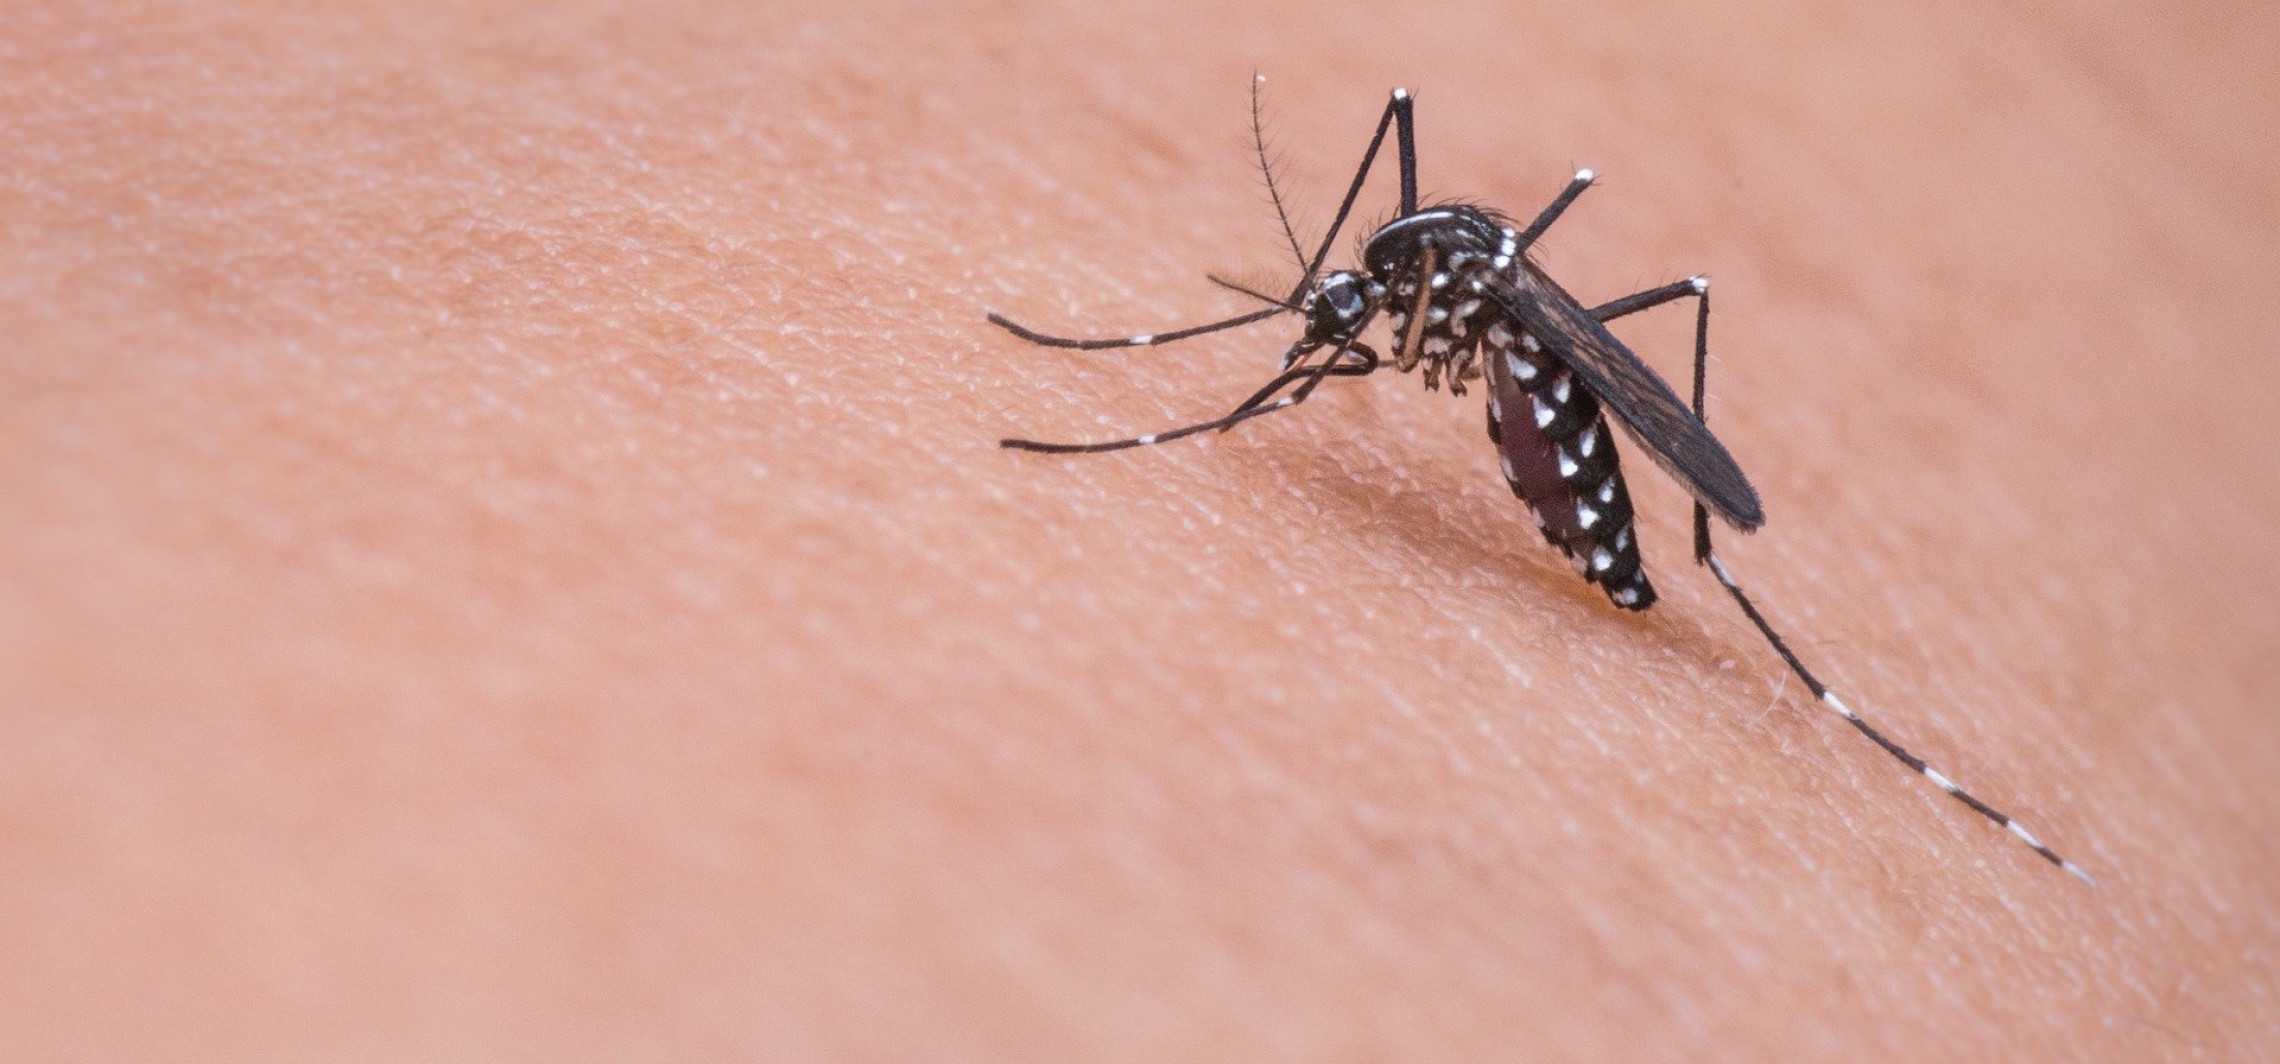 Inowrocław - Zielona środa: sposoby na komary